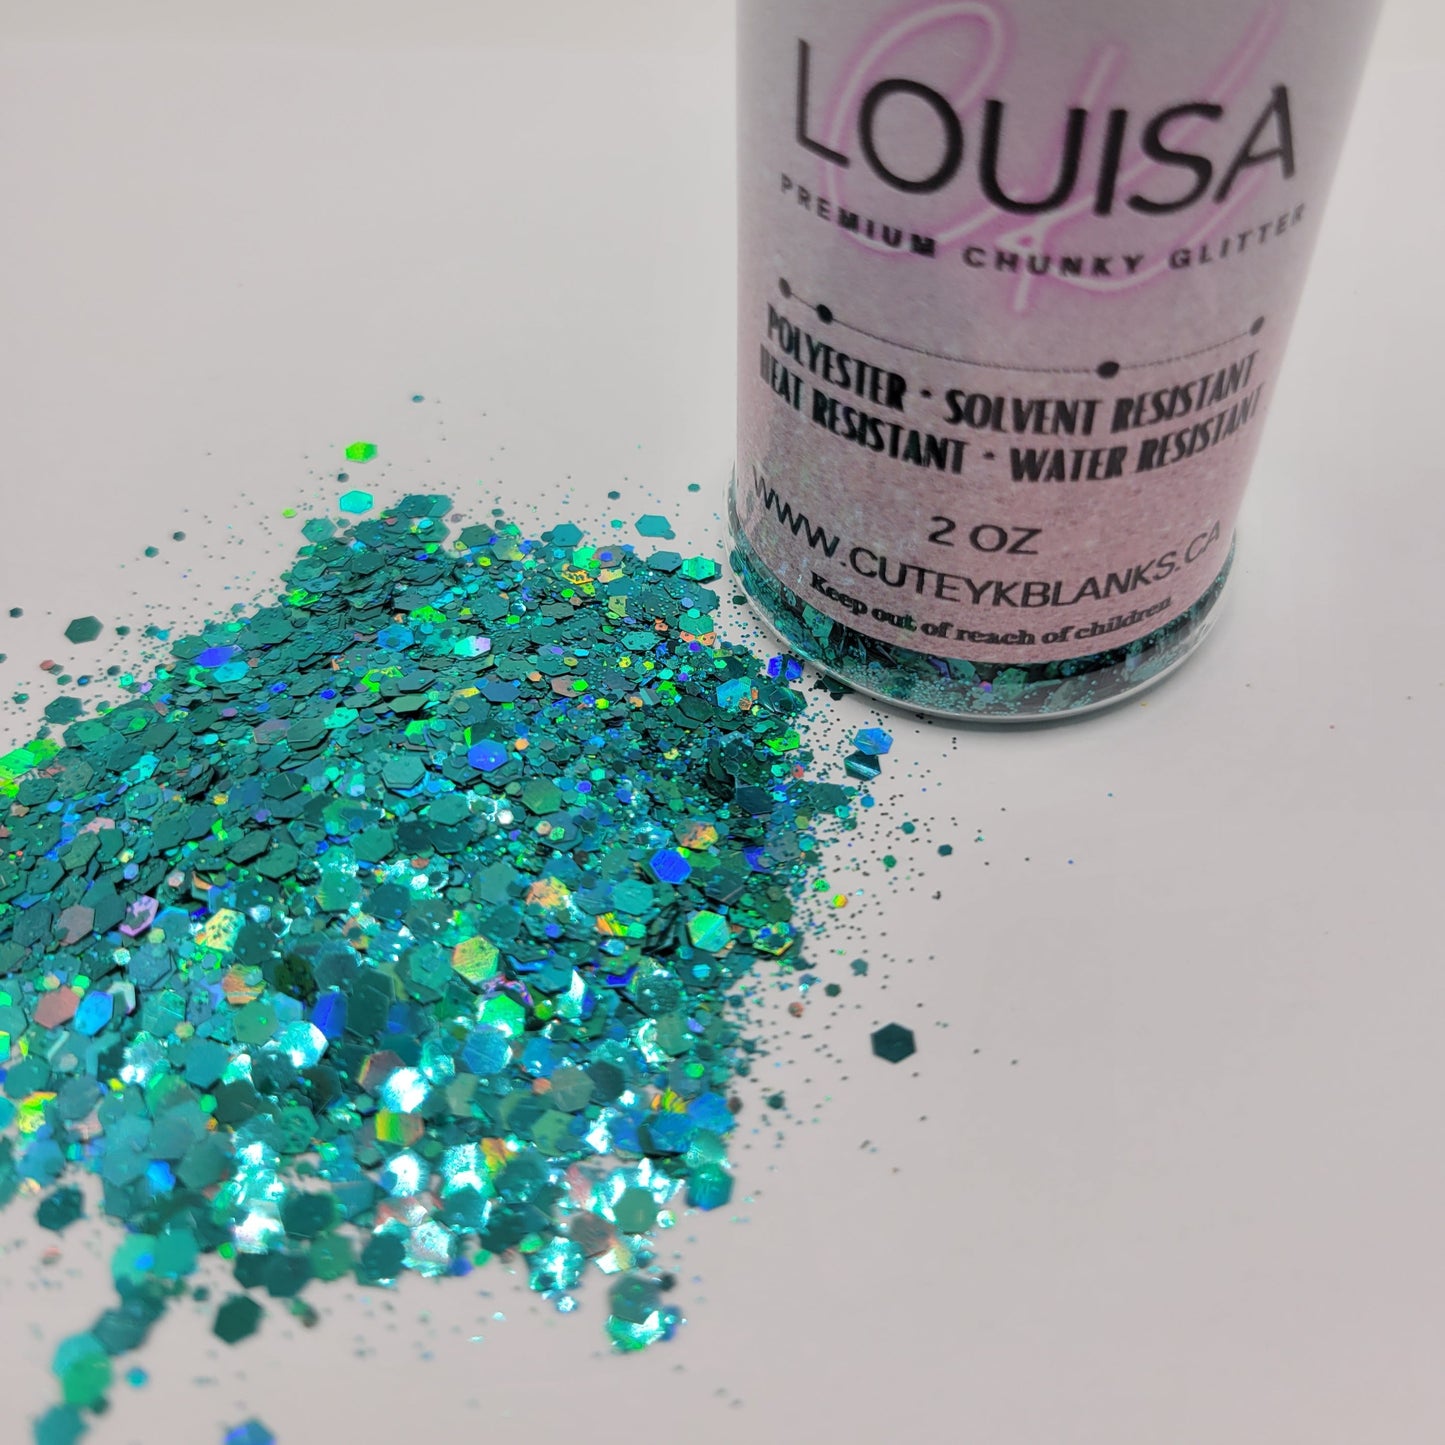 Louisa - Premium Chunky Glitter